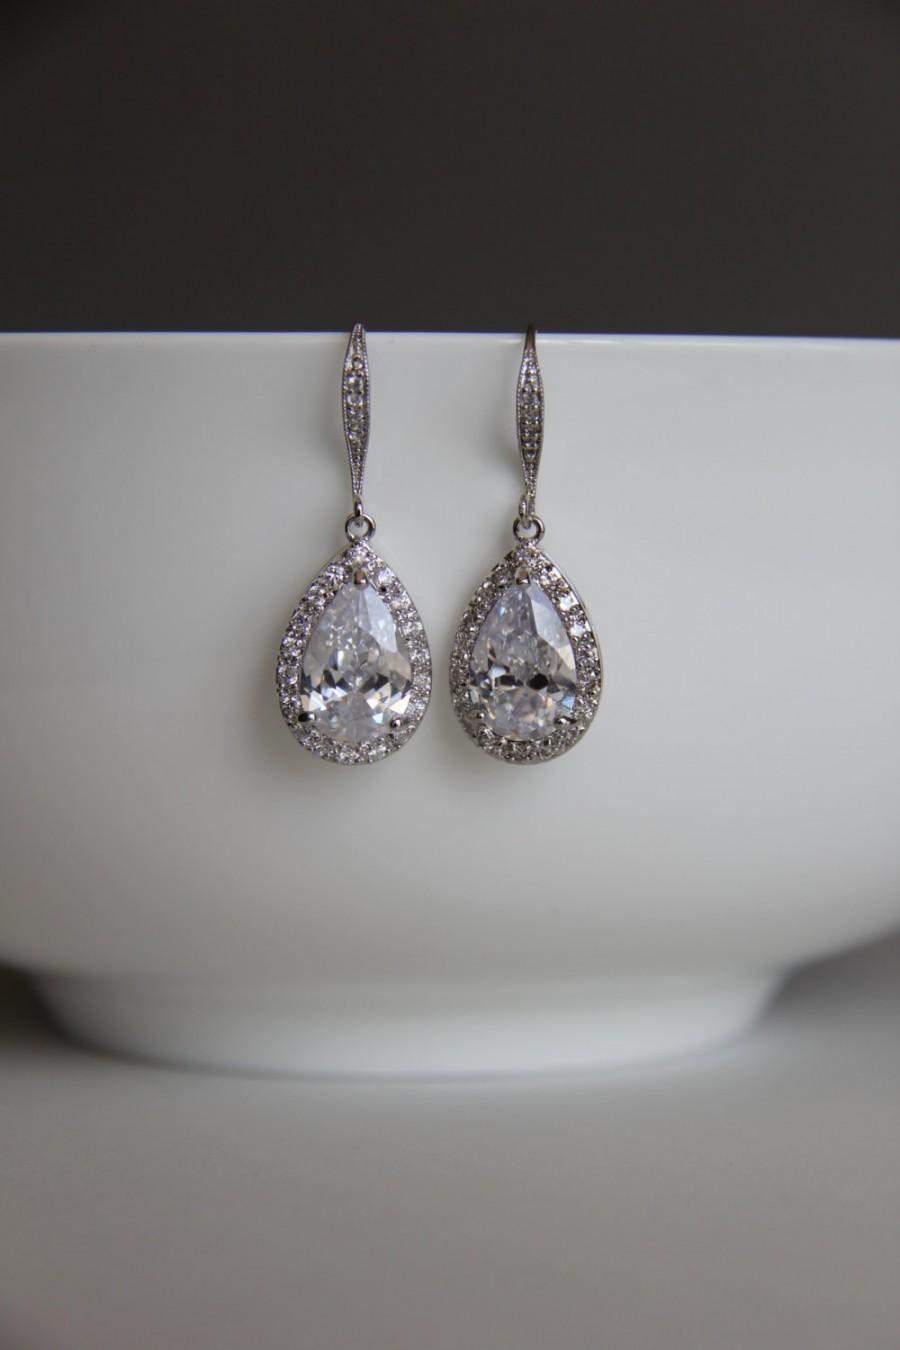 Hochzeit - Bridal earrings, cz earrings, wedding earrings, bridesmaid earrings, bridal jewelry, wedding jewelry, cz jewelry, dangley earrings